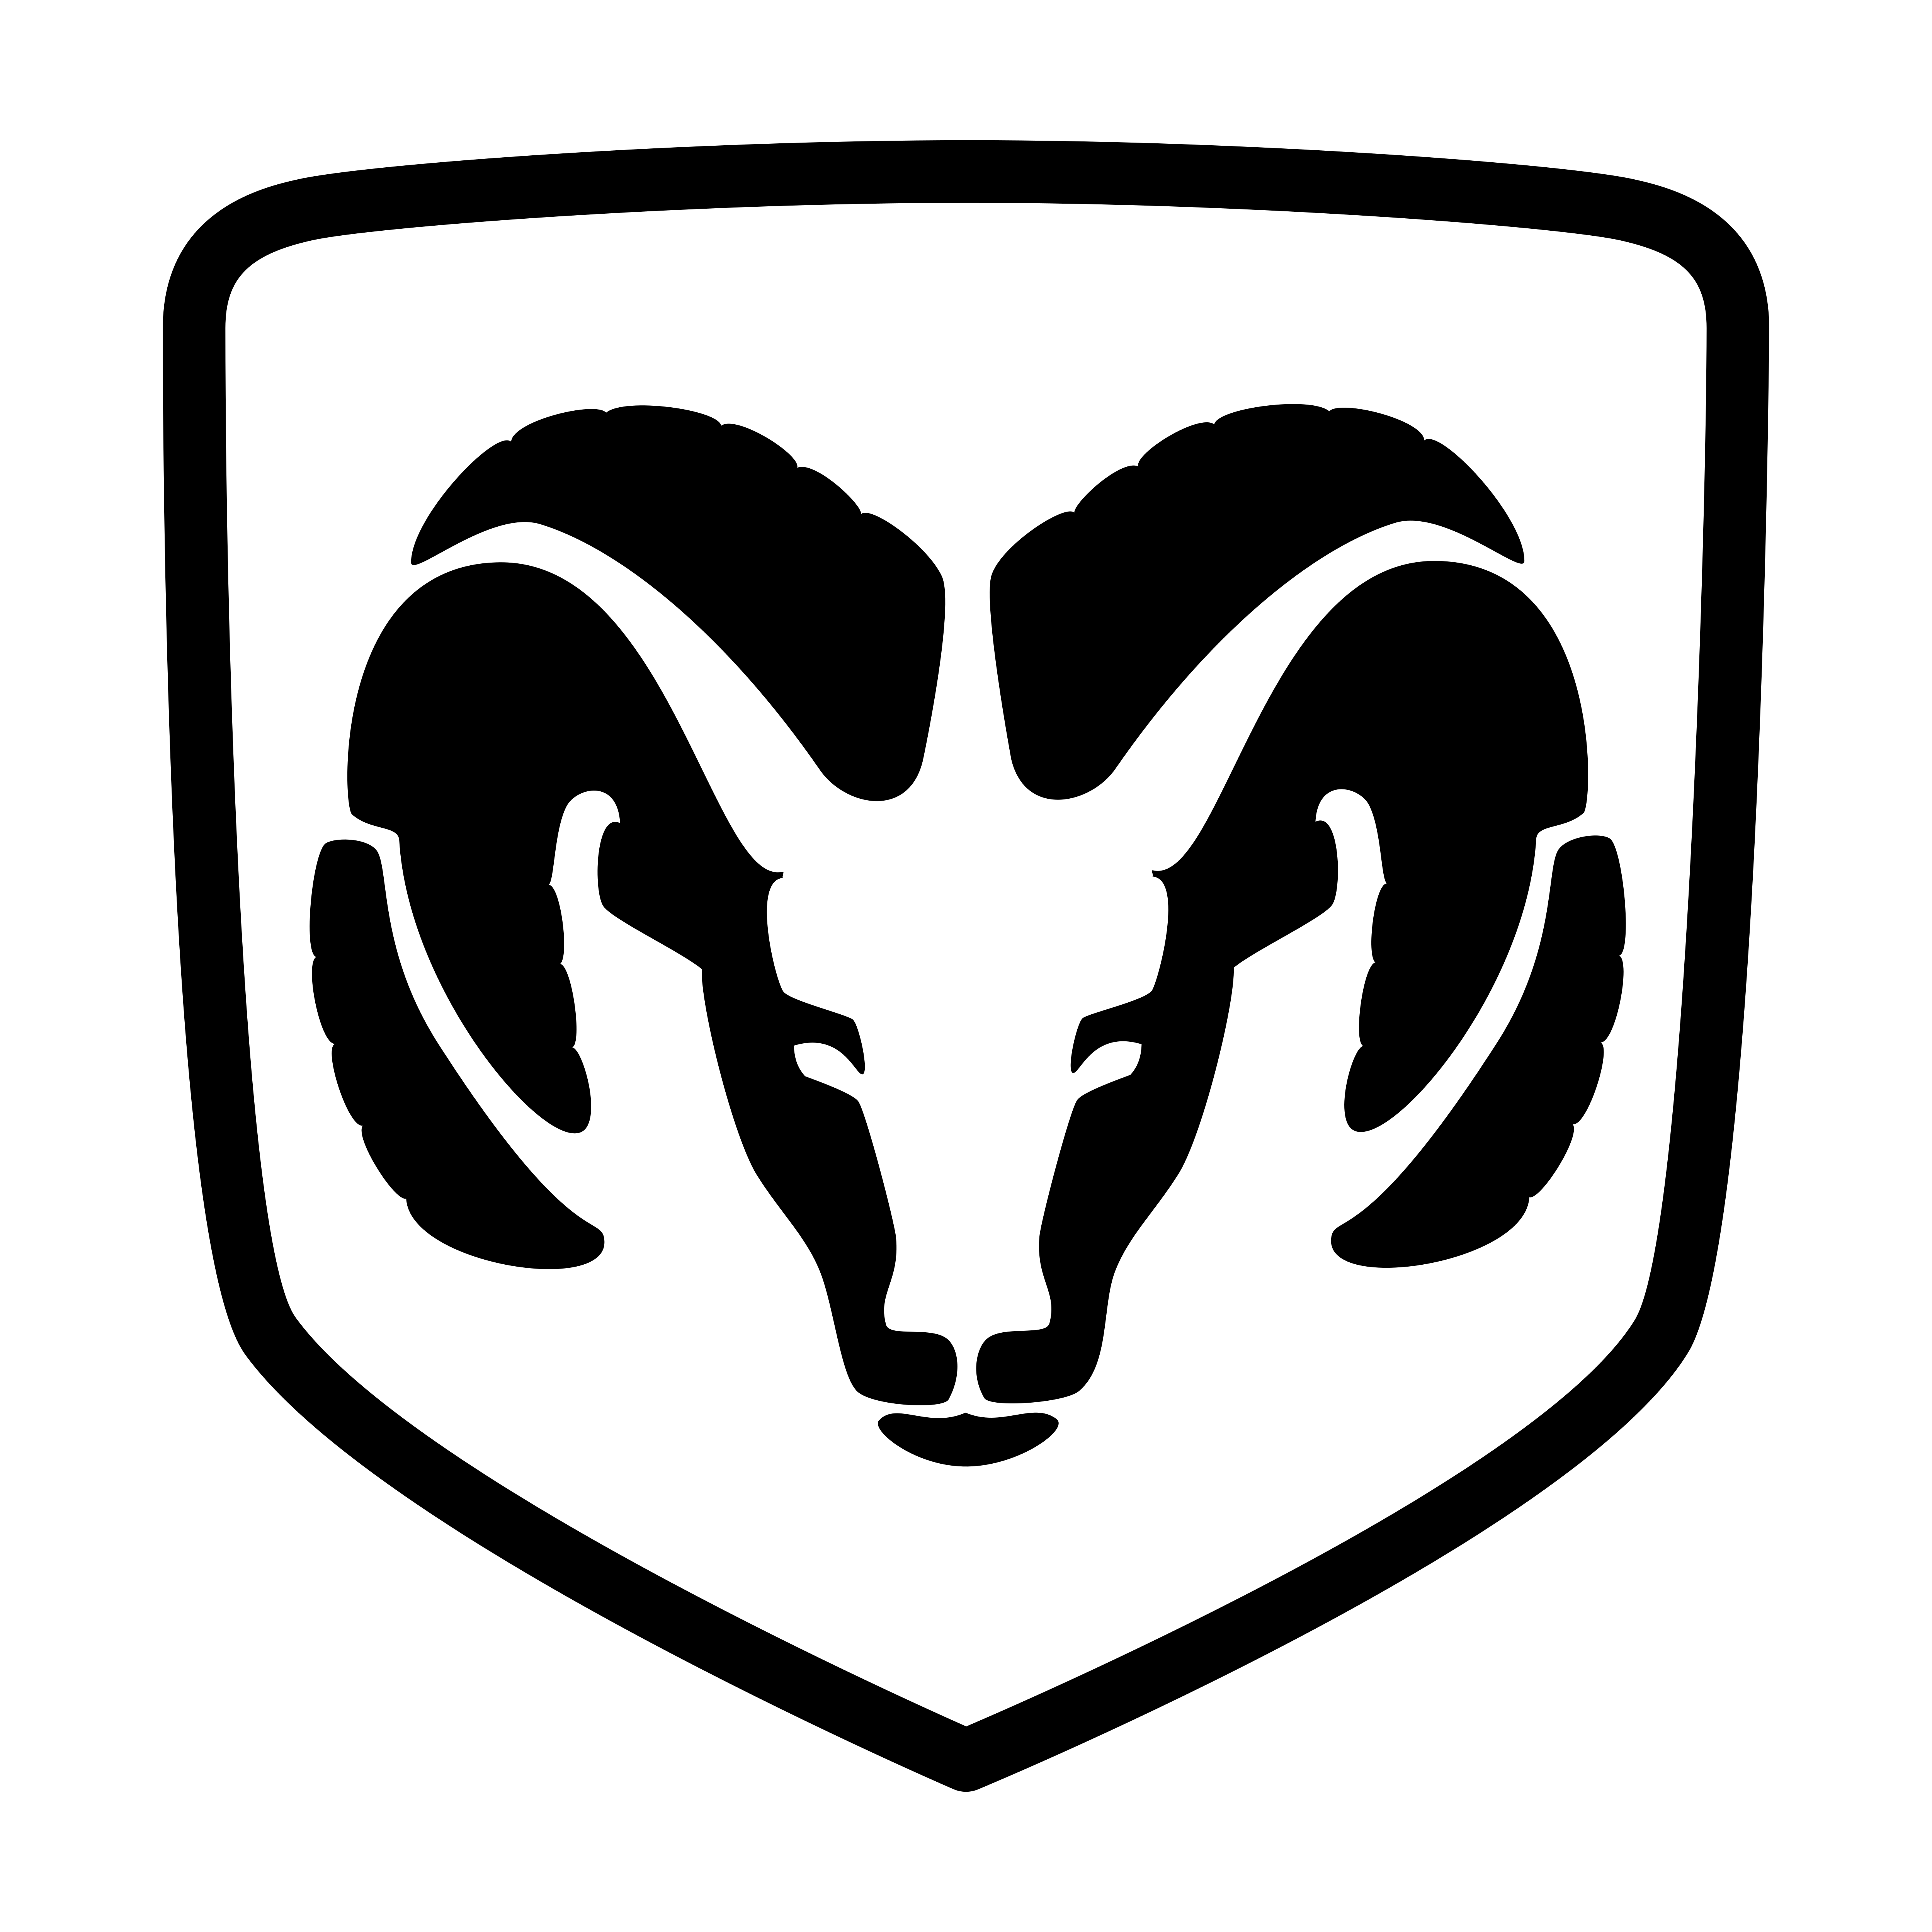 Dodge logo old - Logos Download